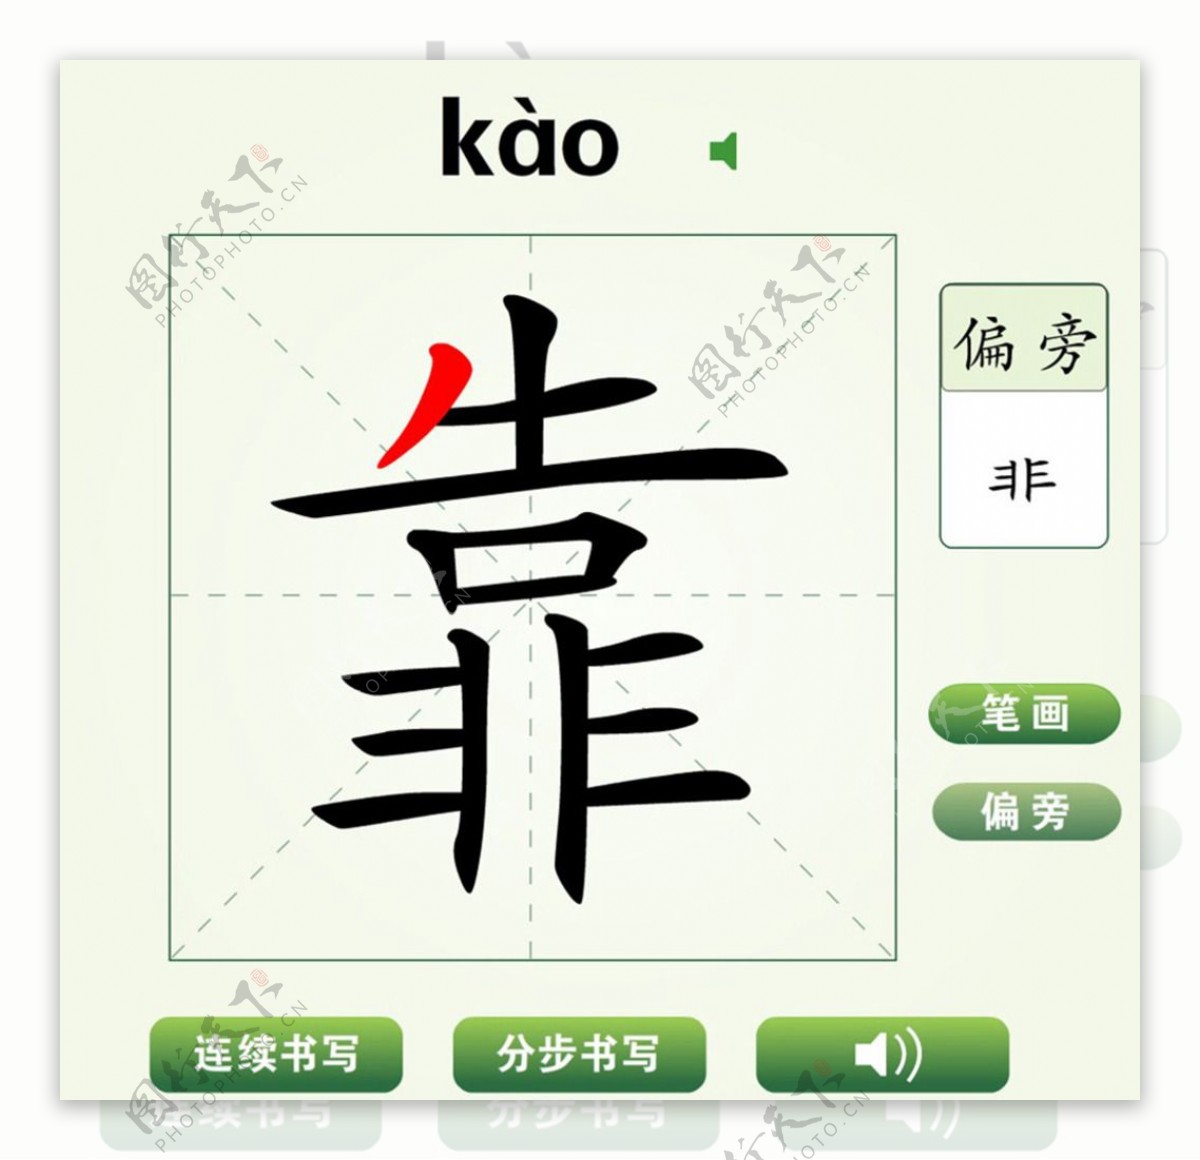 中国汉字靠字笔画教学动画视频